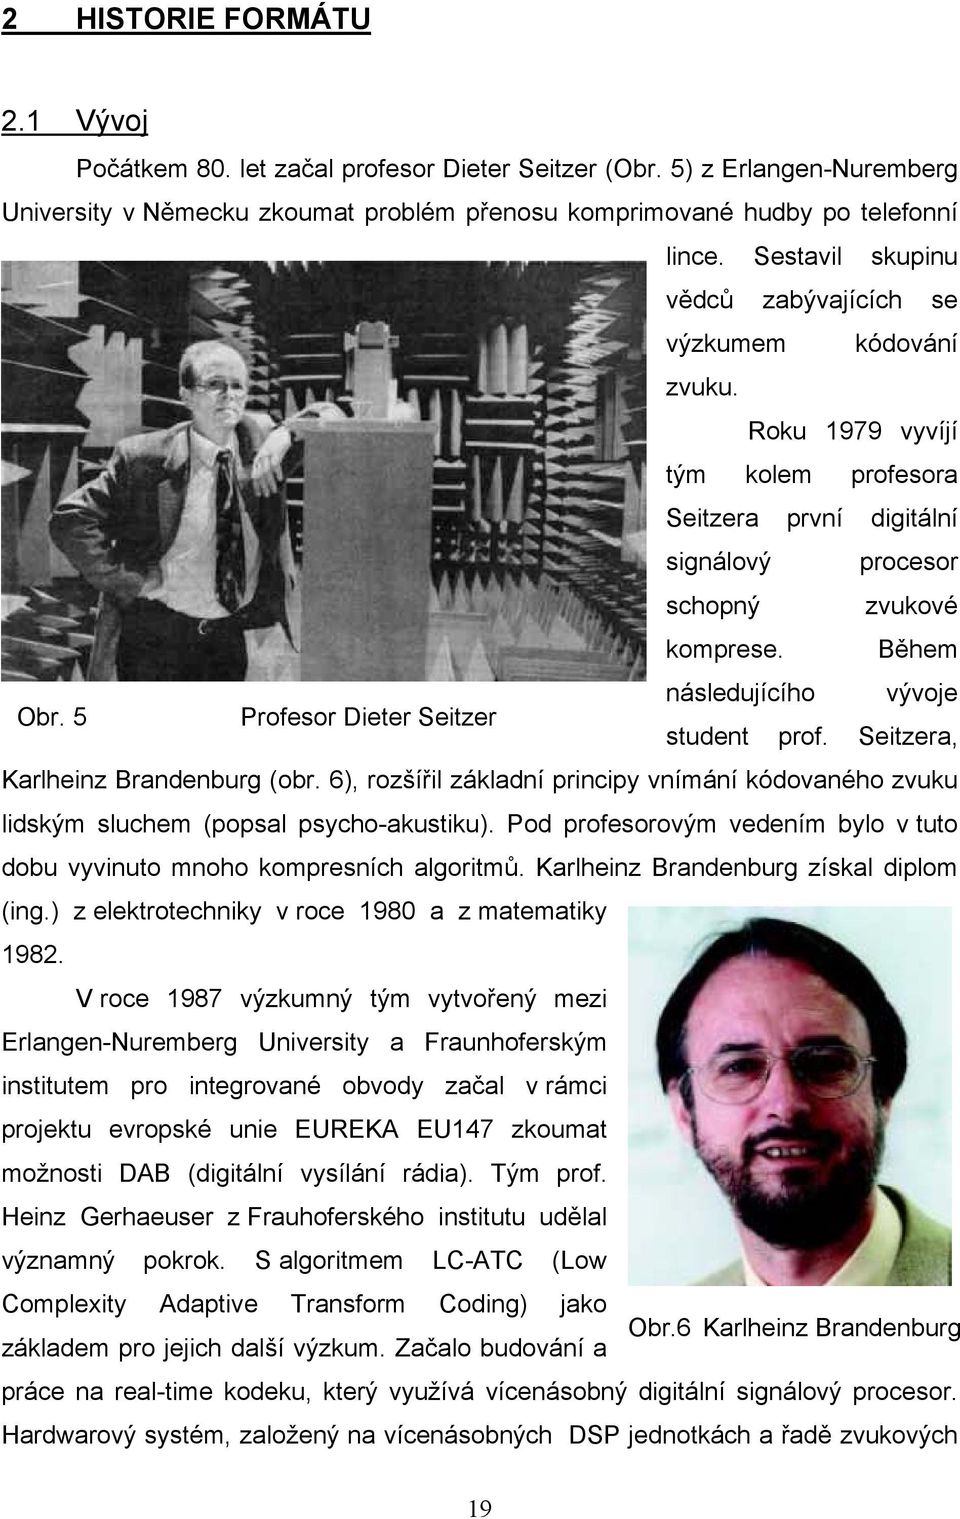 5 Profesor Dieter Seitzer následujícího vývoje student prof. Seitzera, Karlheinz Brandenburg (obr. 6), rozšířil základní principy vnímání kódovaného zvuku lidským sluchem (popsal psycho-akustiku).